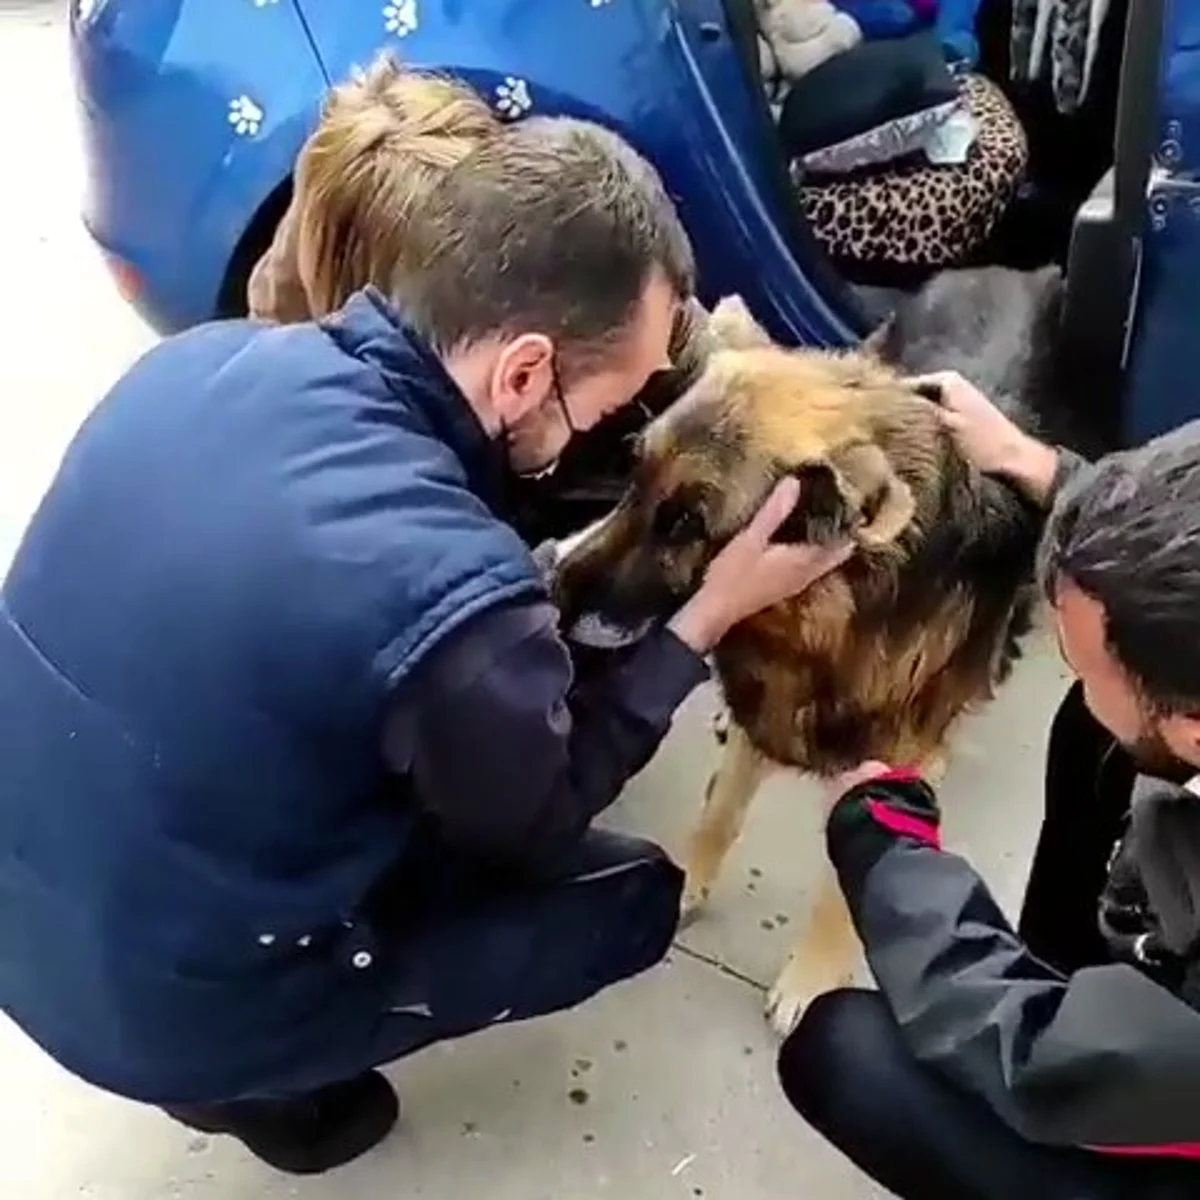 La emotiva historia de Dico, el perro que vuelve a reencontrarse con su  familia tras 7 años perdido